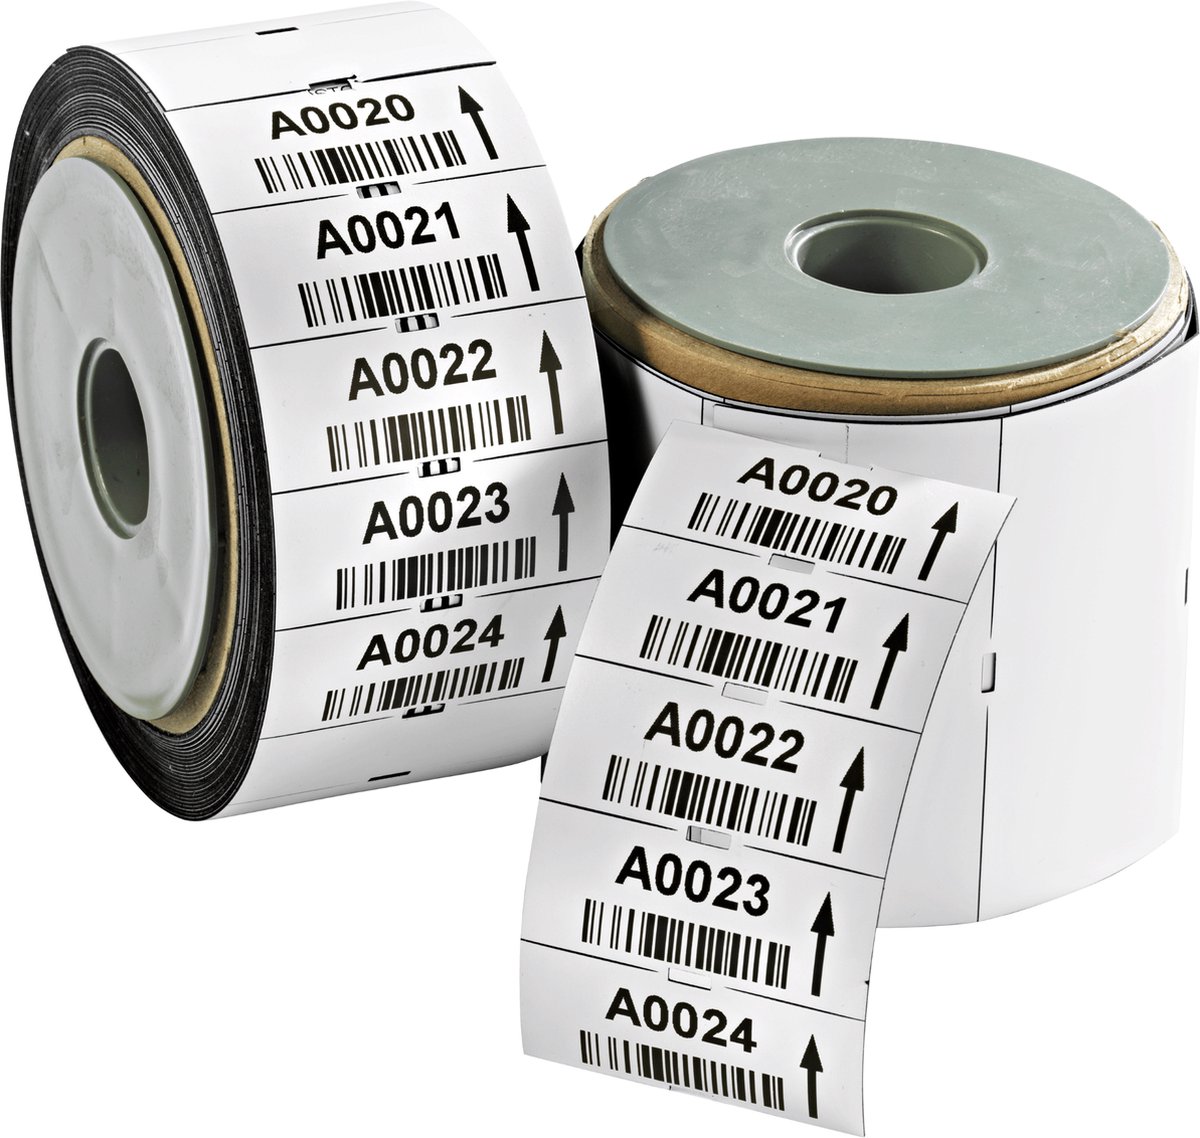 COROSTOC TT magnetische etiketten om zelf te bedrukken (500 st.: 60 x 30 mm / 15meter)